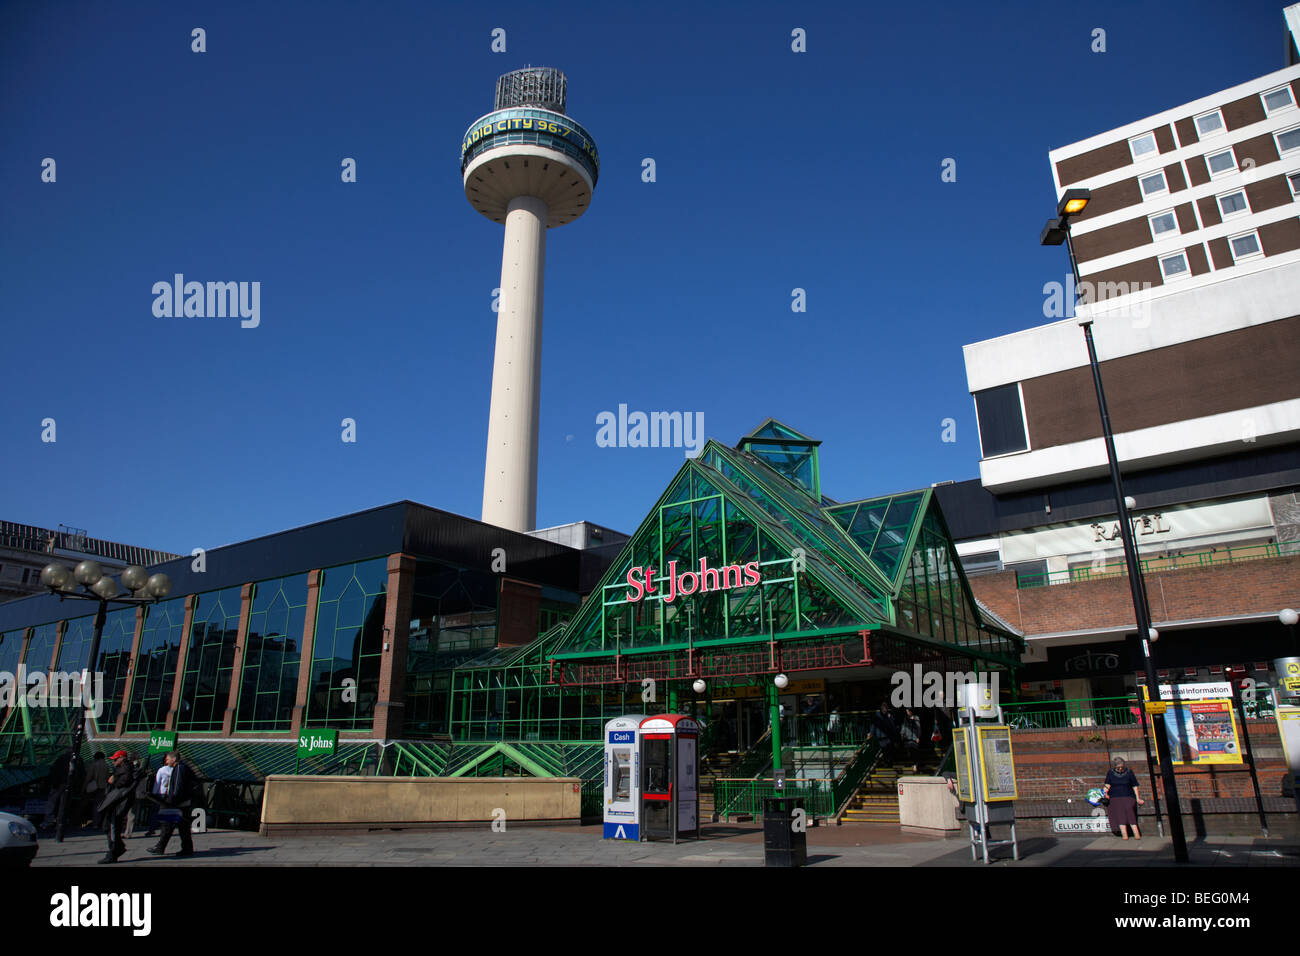 Radio City tower et St Johns Centre commercial dans le quartier commerçant de centre-ville de Liverpool Merseyside England uk Banque D'Images